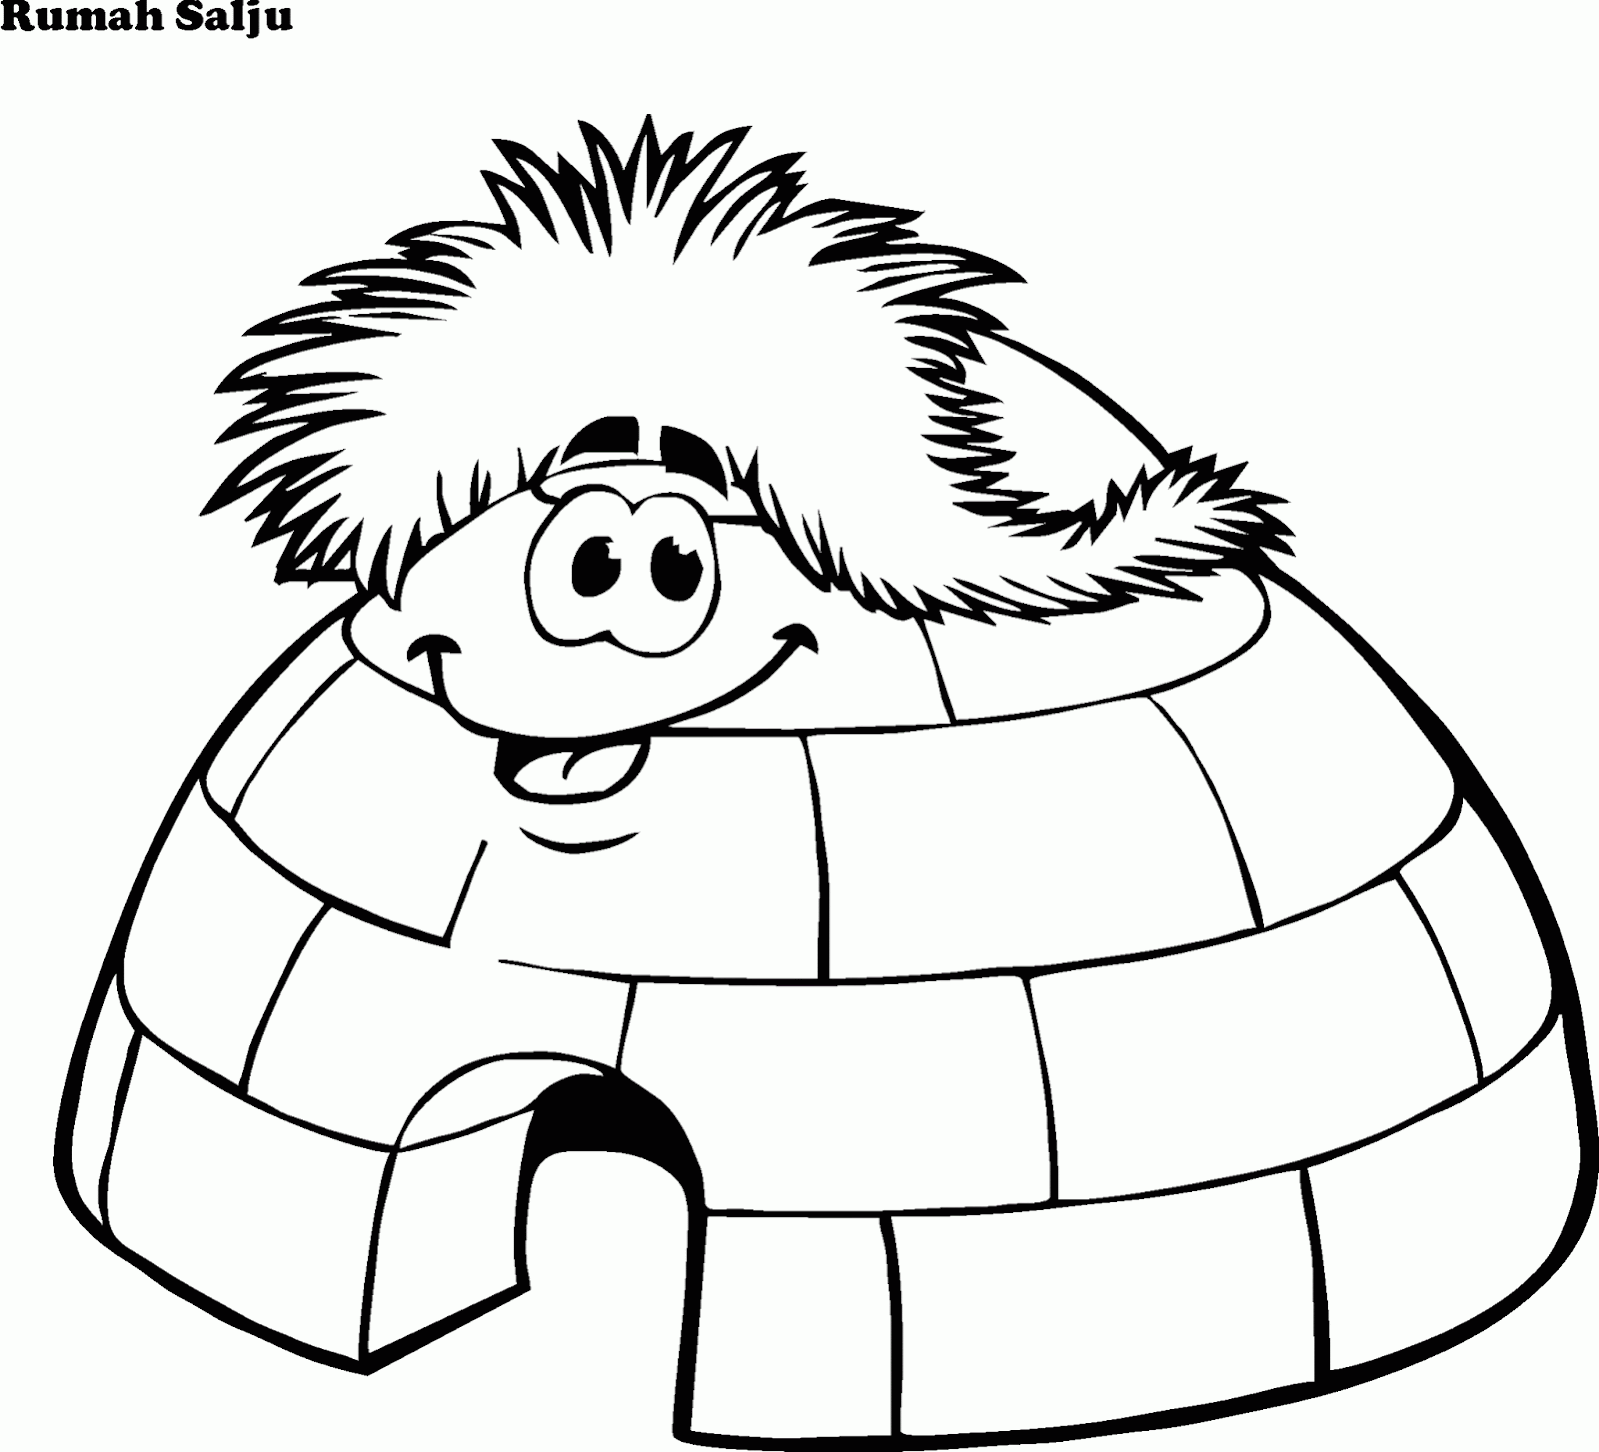 Gambar Rumah Kartun Hitam Putih. gambar mewarnai igloo 